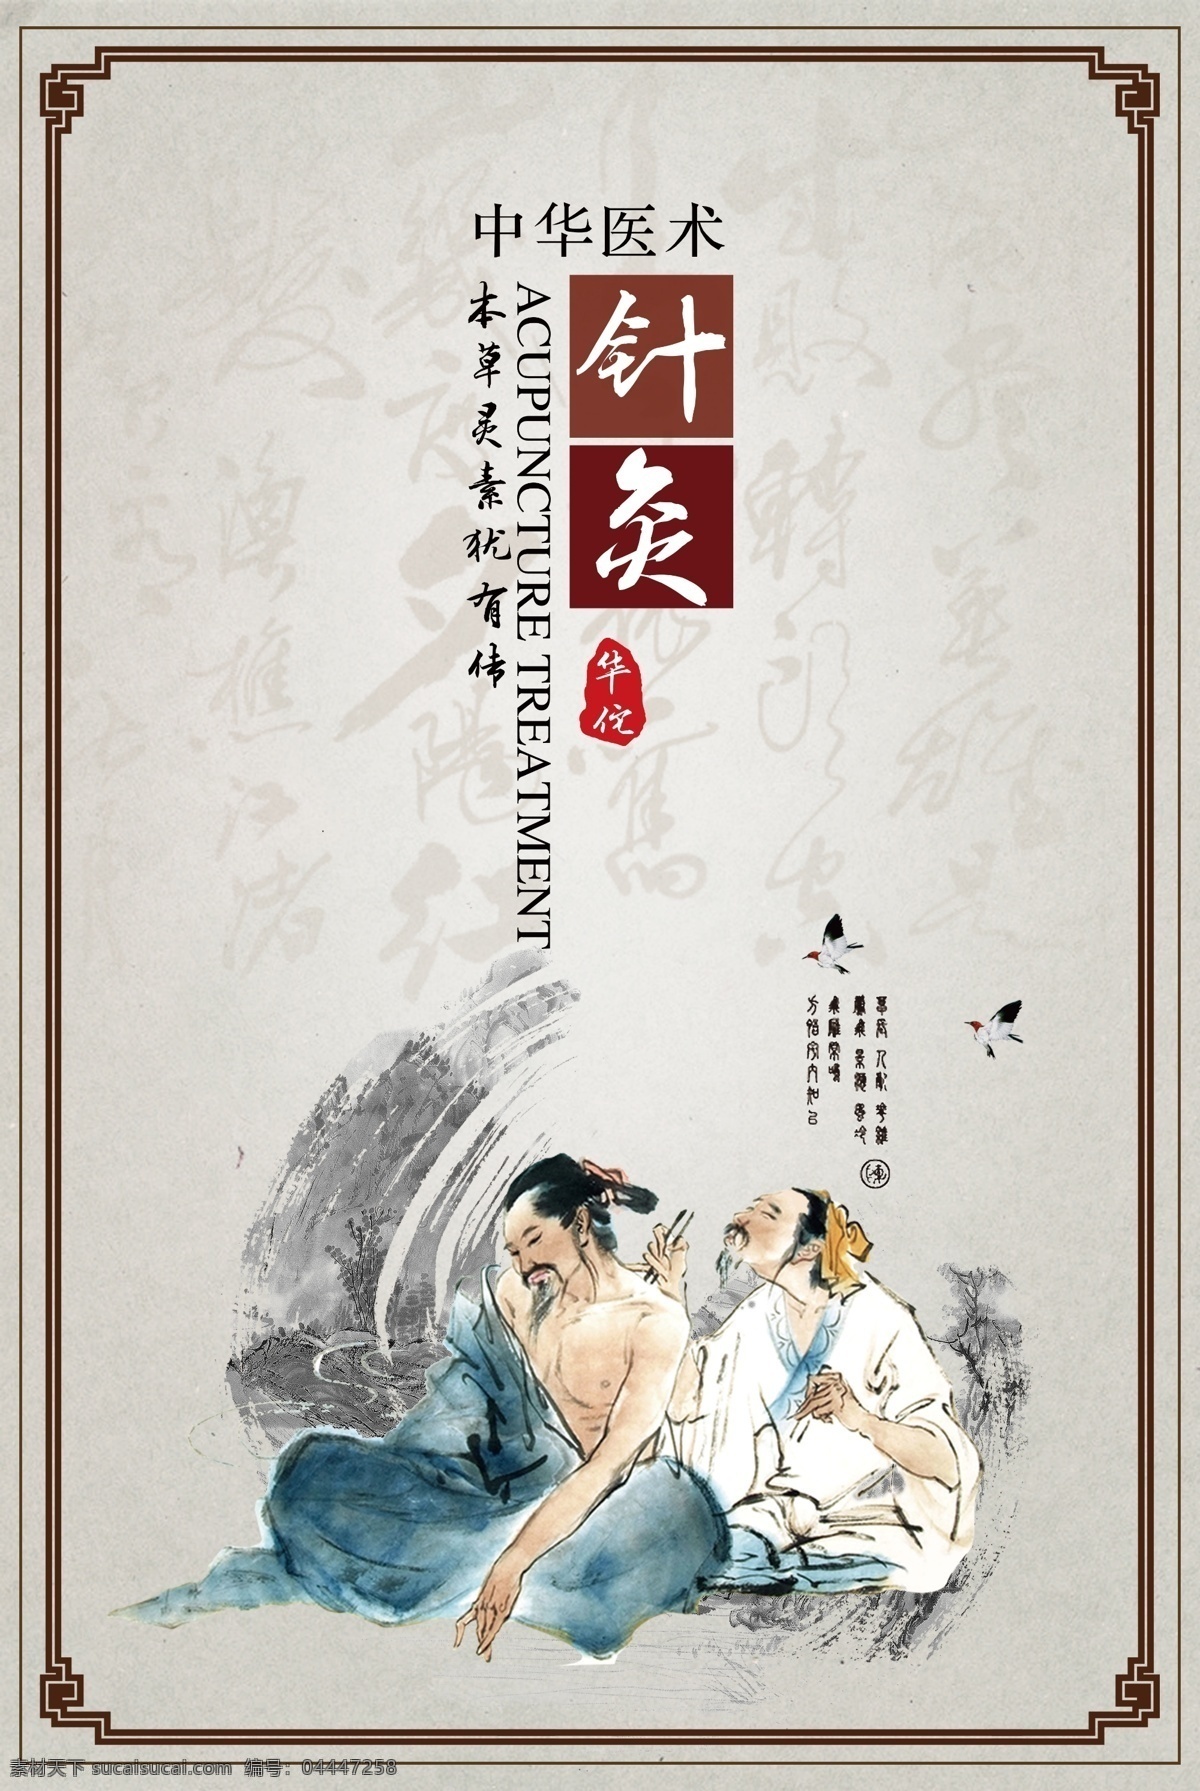 针灸 传统文化 中医 公益 宣传海报 传统 文化 宣传 海报 社会